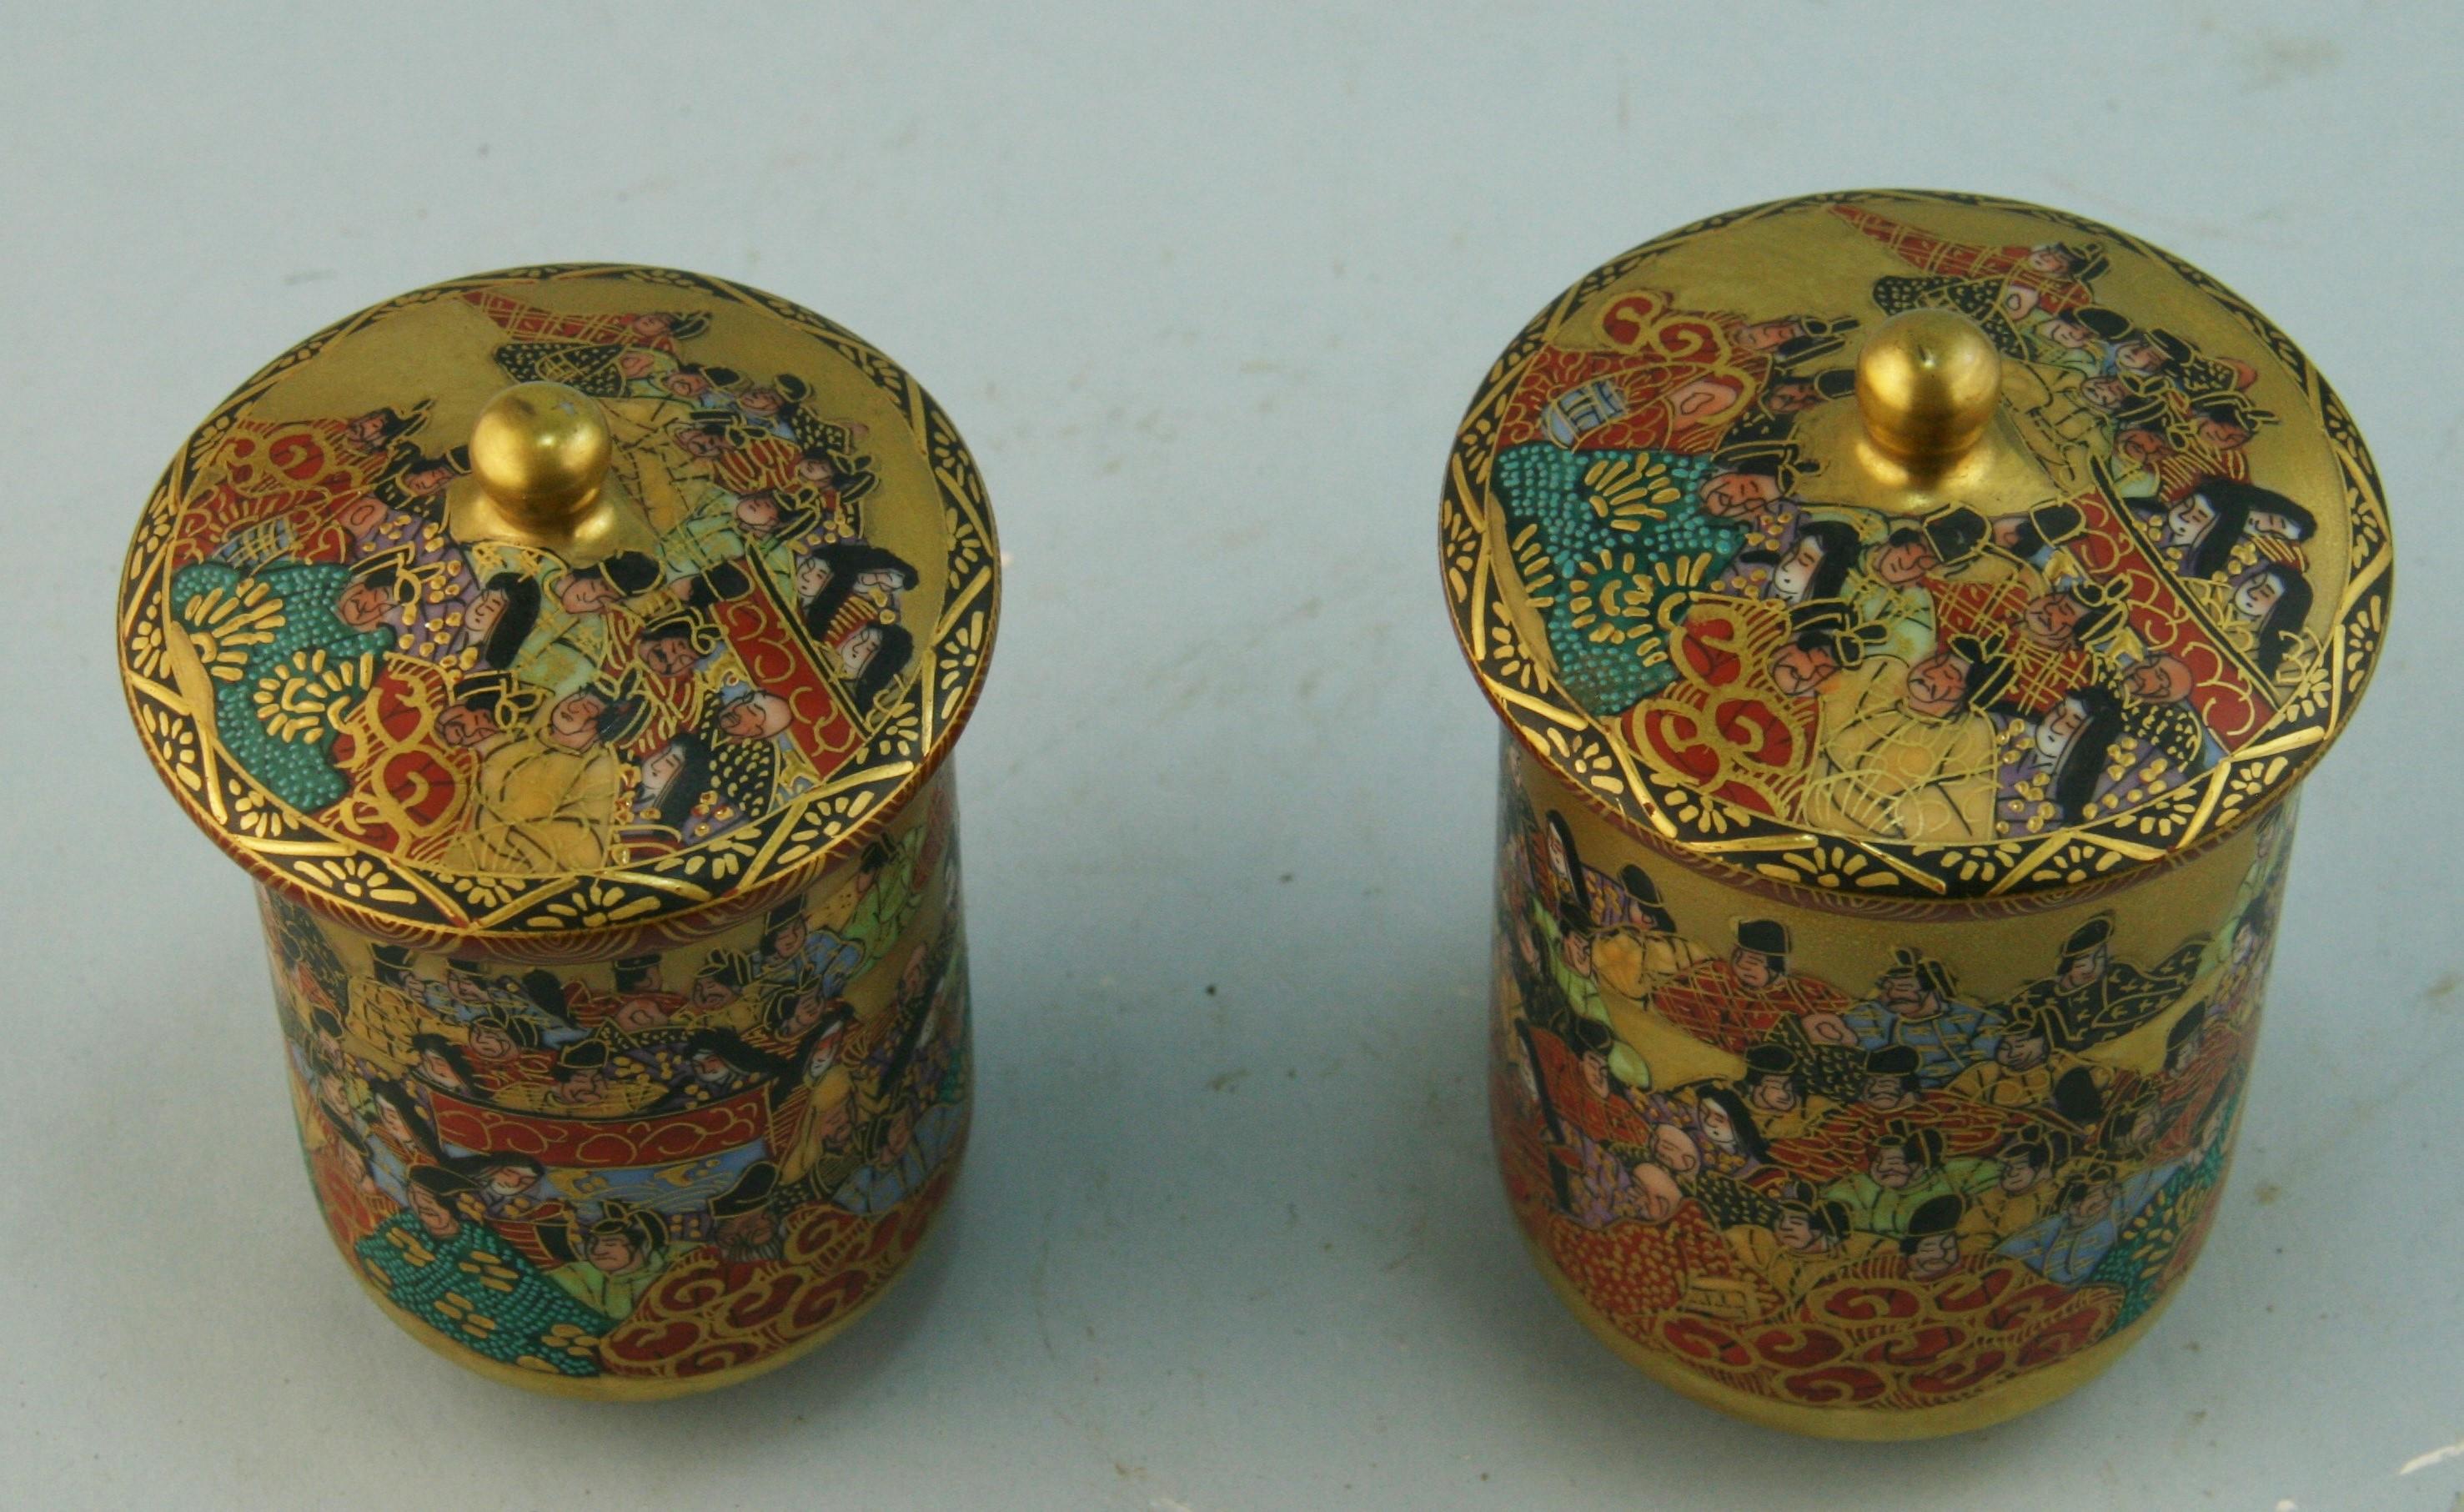 Paire de coupes japonaises à couvercle décoré à la main Satsuma
Mesures : 3.25